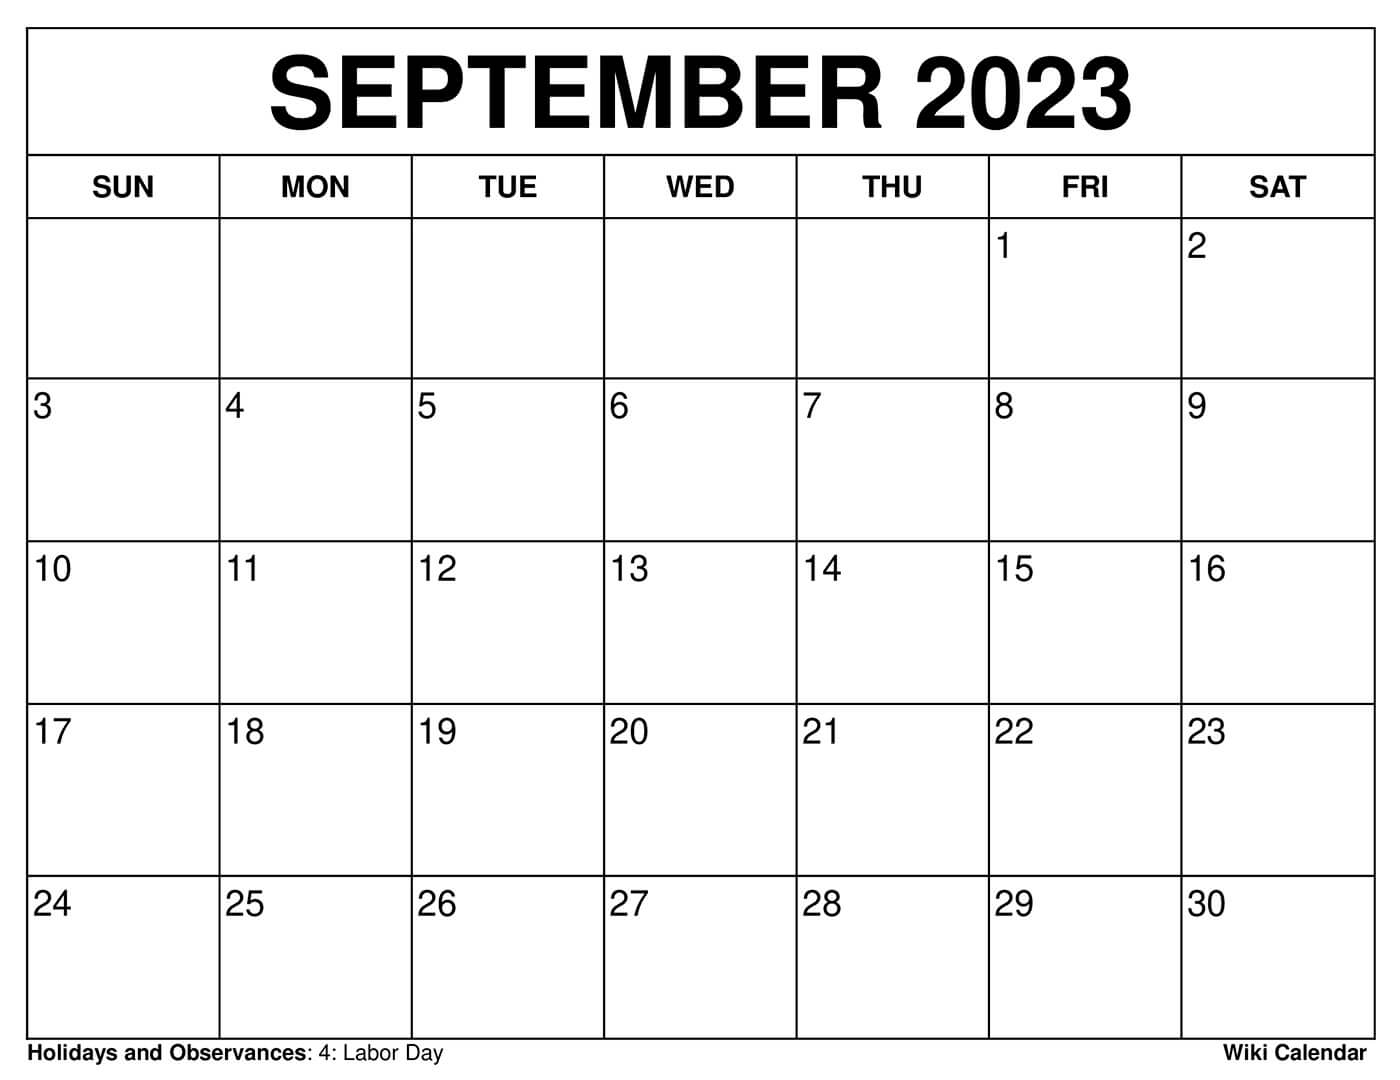 September 2022 Calendar Free Printable September 2022 Calendars - Wiki Calendar